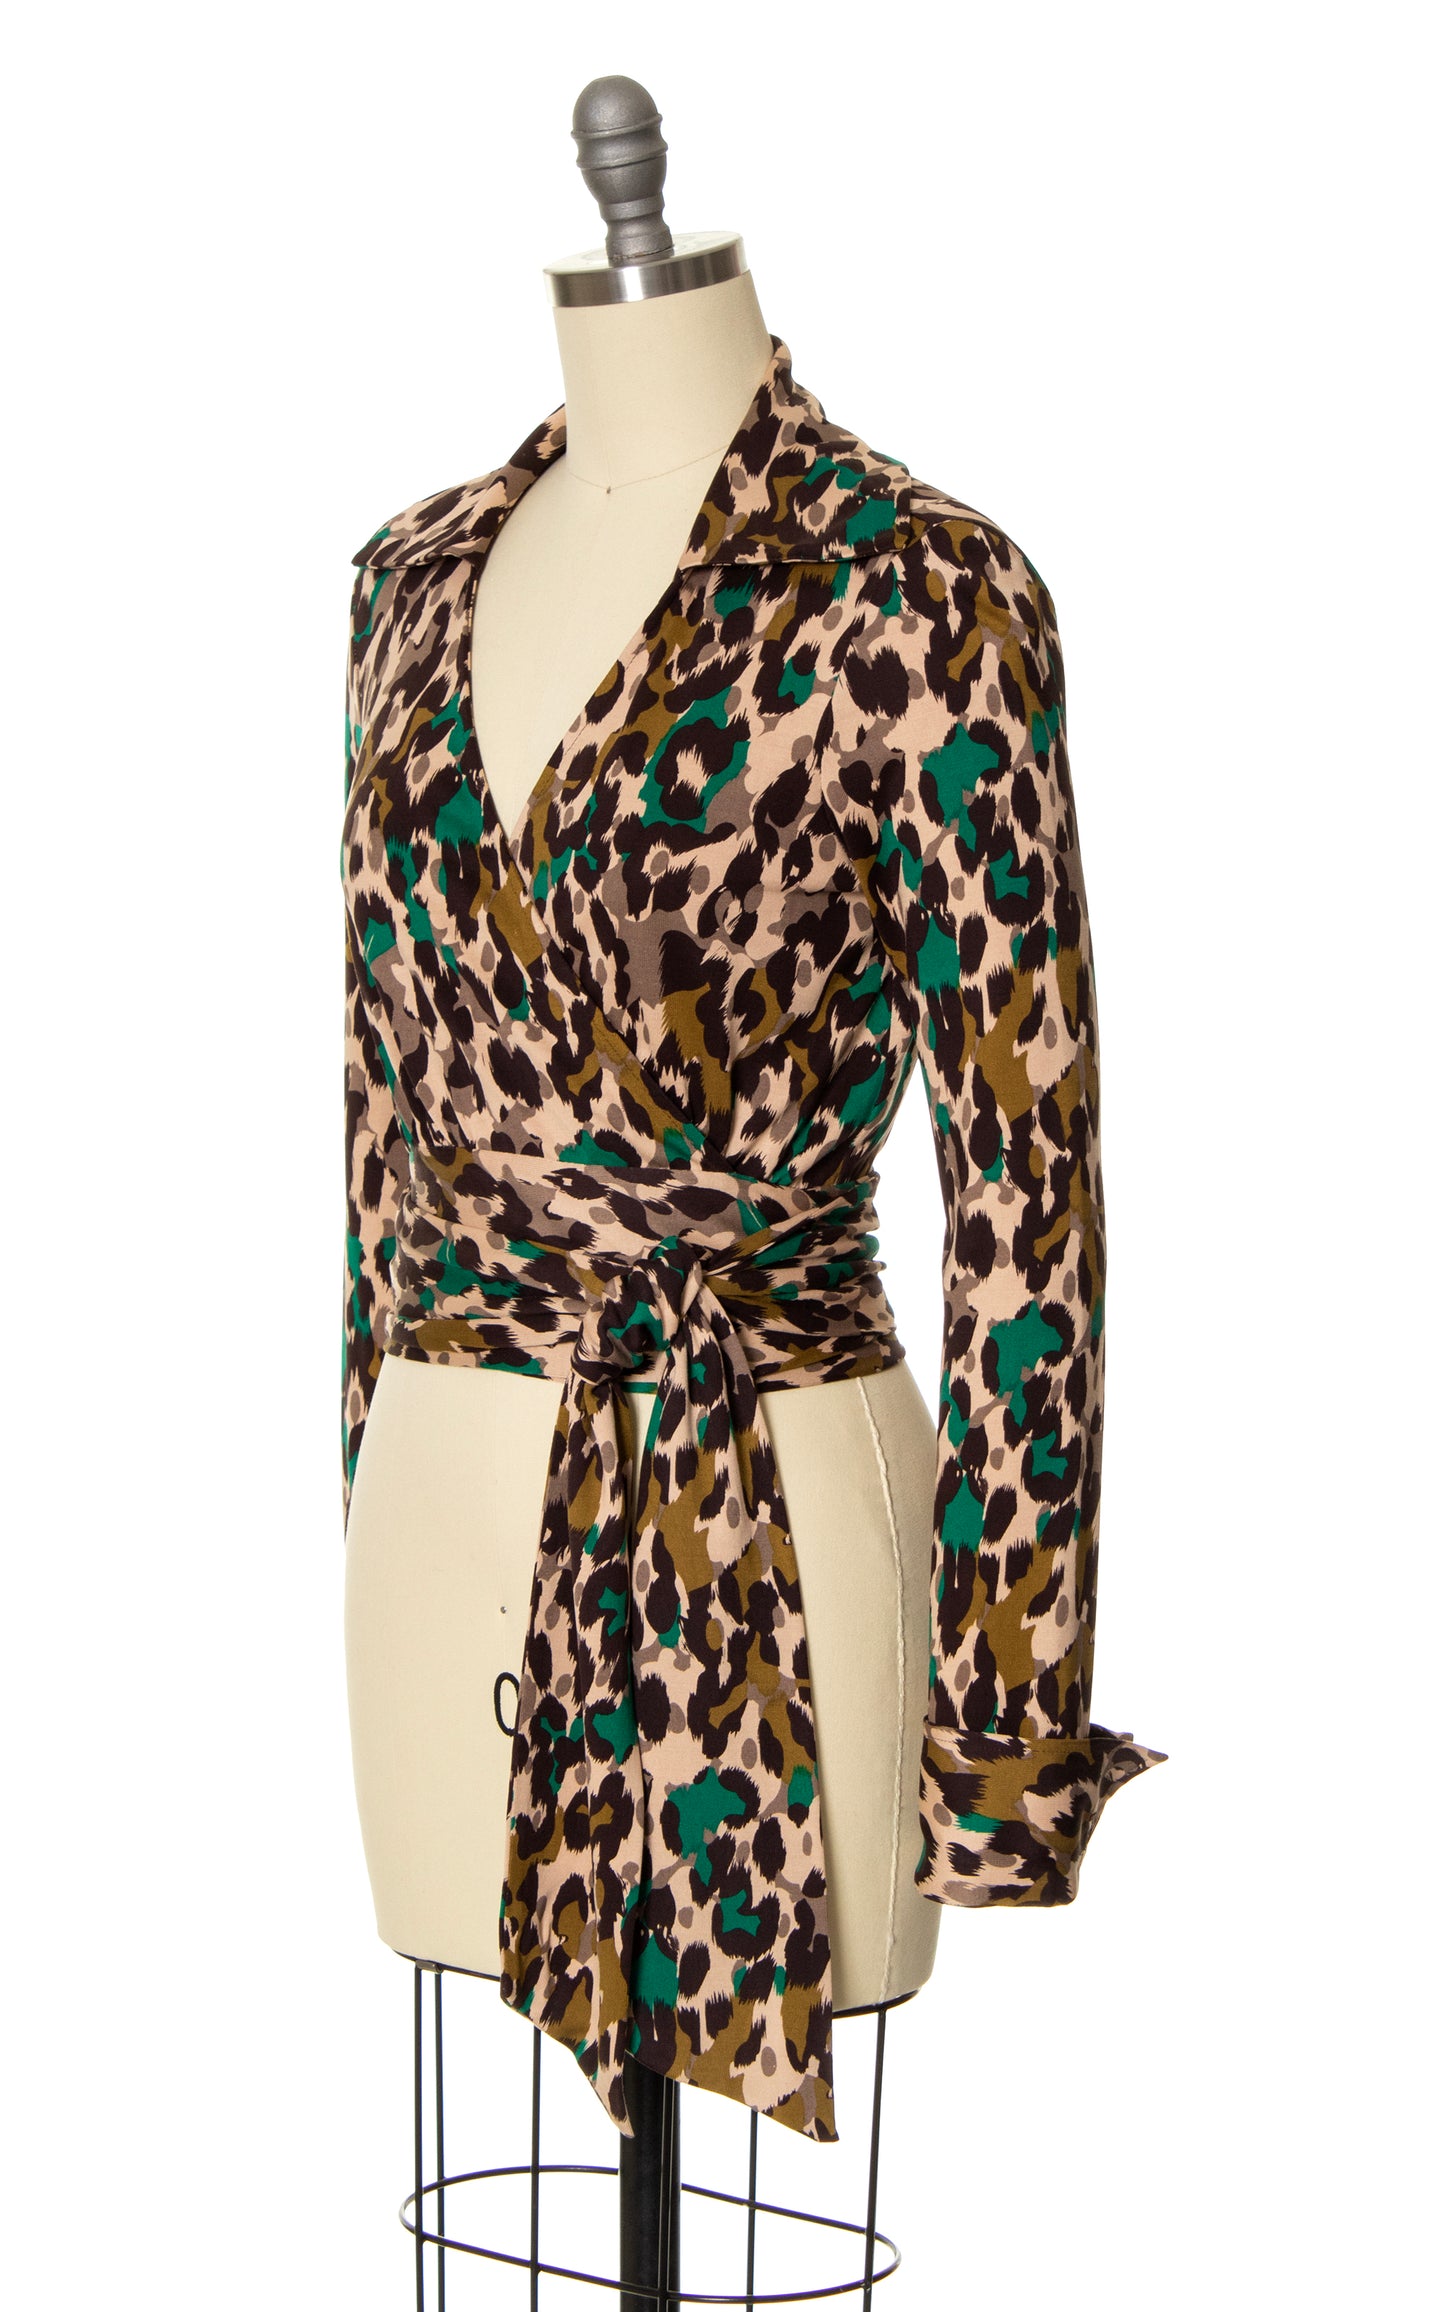 MODERN 1970s Style DIANE VON FURSTENBERG Leopard Print Silk Jersey Wrap Top | x-small/small